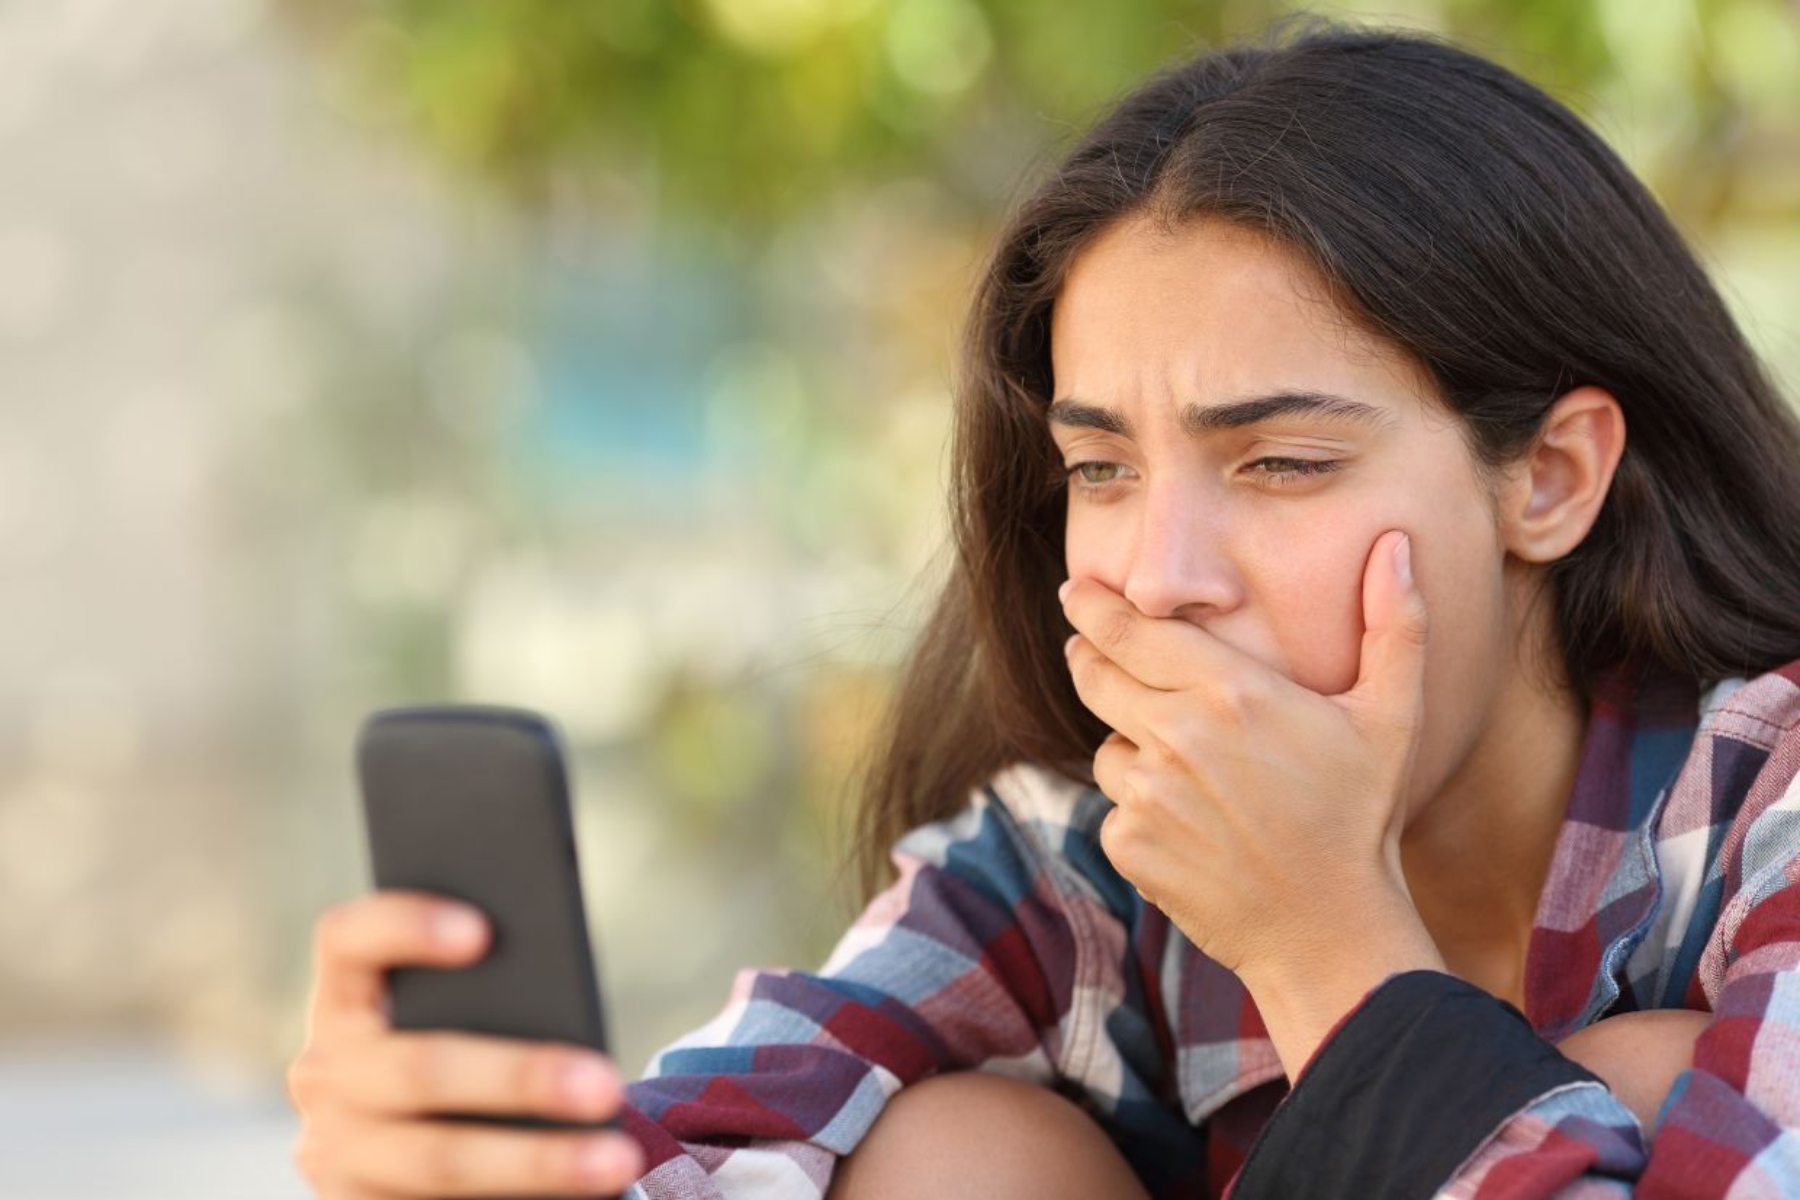 Σχεδόν οι μισοί Βρετανοί έφηβοι αισθάνονται εθισμένοι στα social media